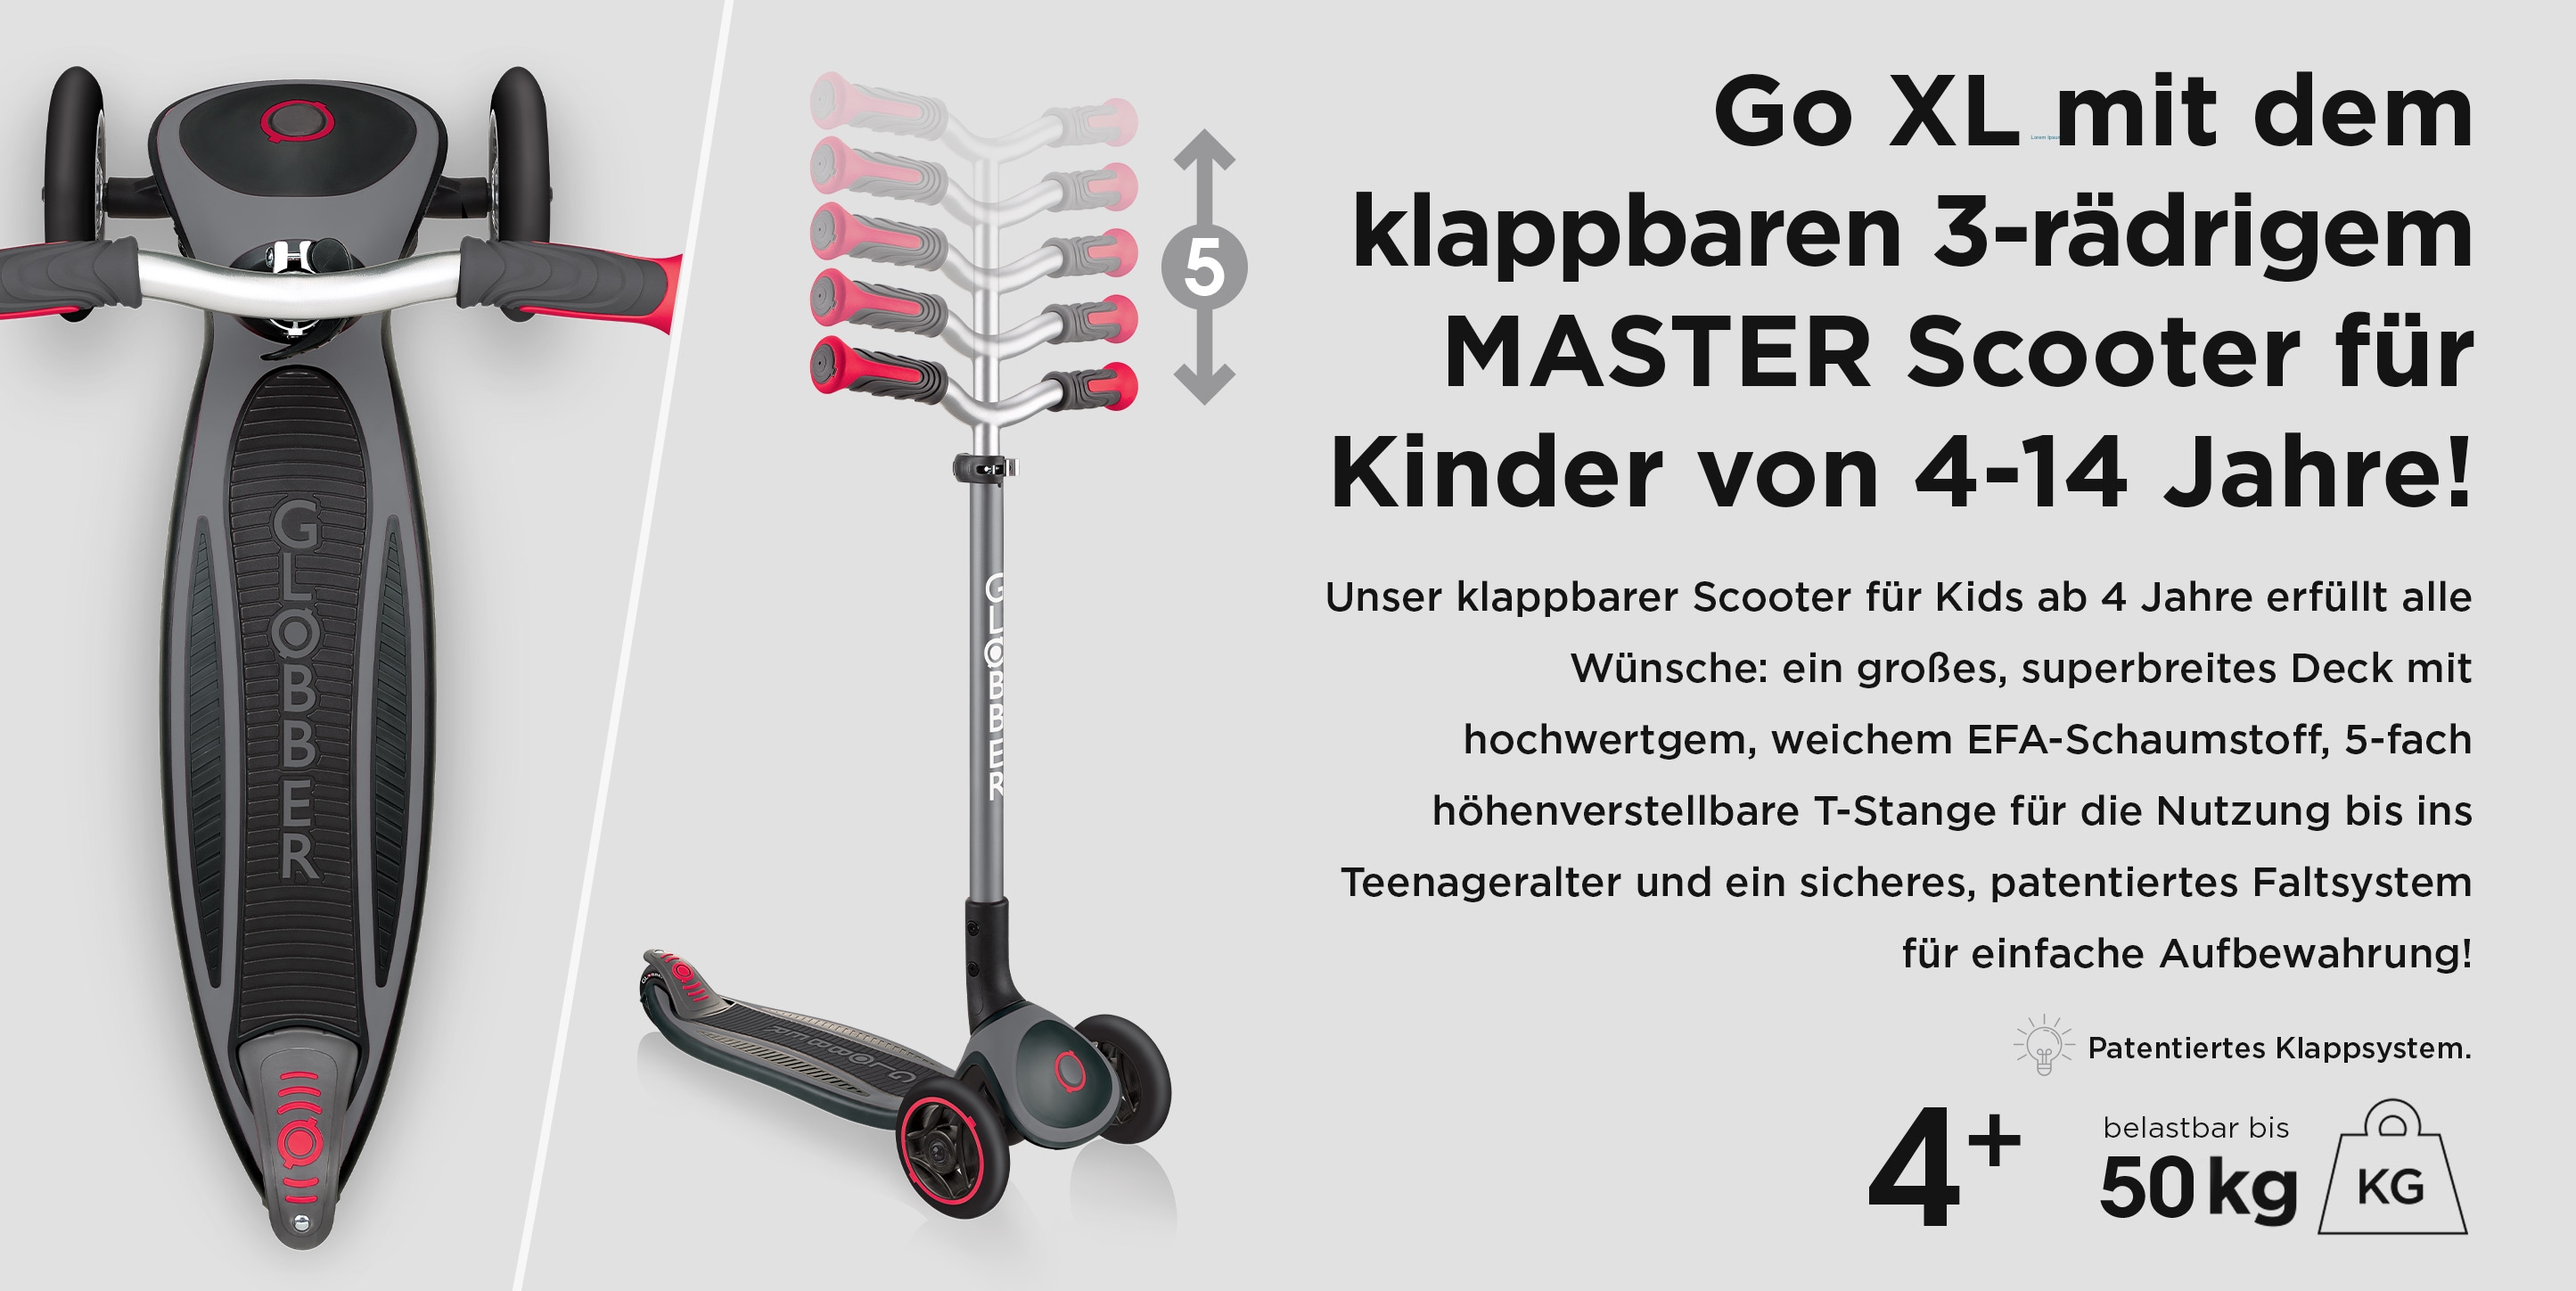 Go XL mit dem  klappbaren  3-rädrigem MASTER Scooter für Kinder von 4-14 Jahre!